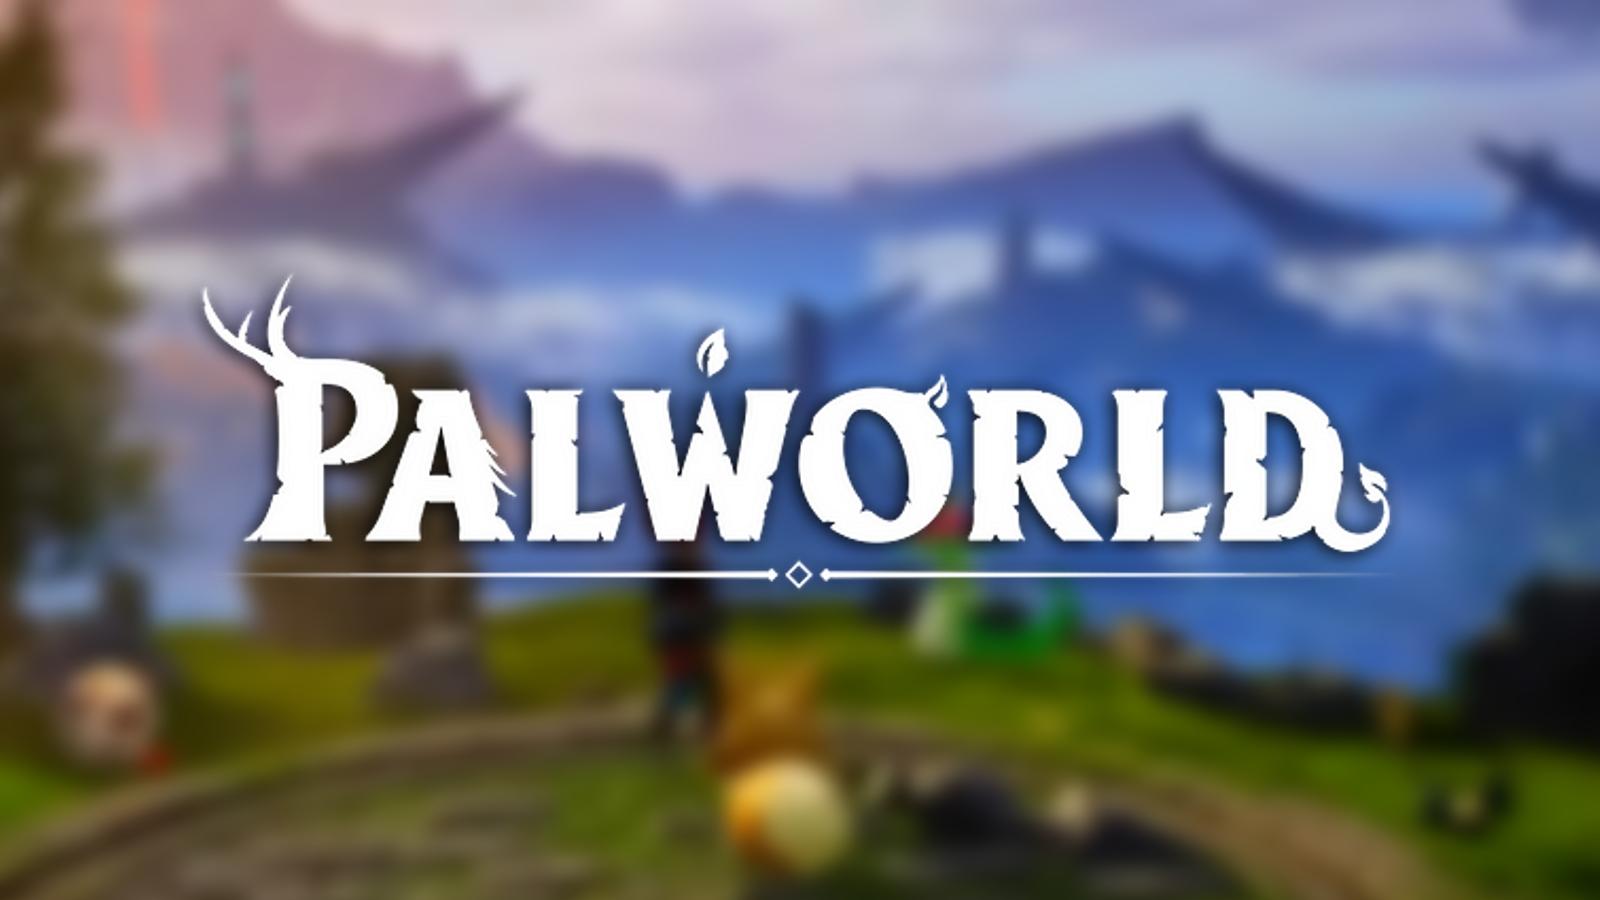 Palworld logo on blurred background of Palworld island